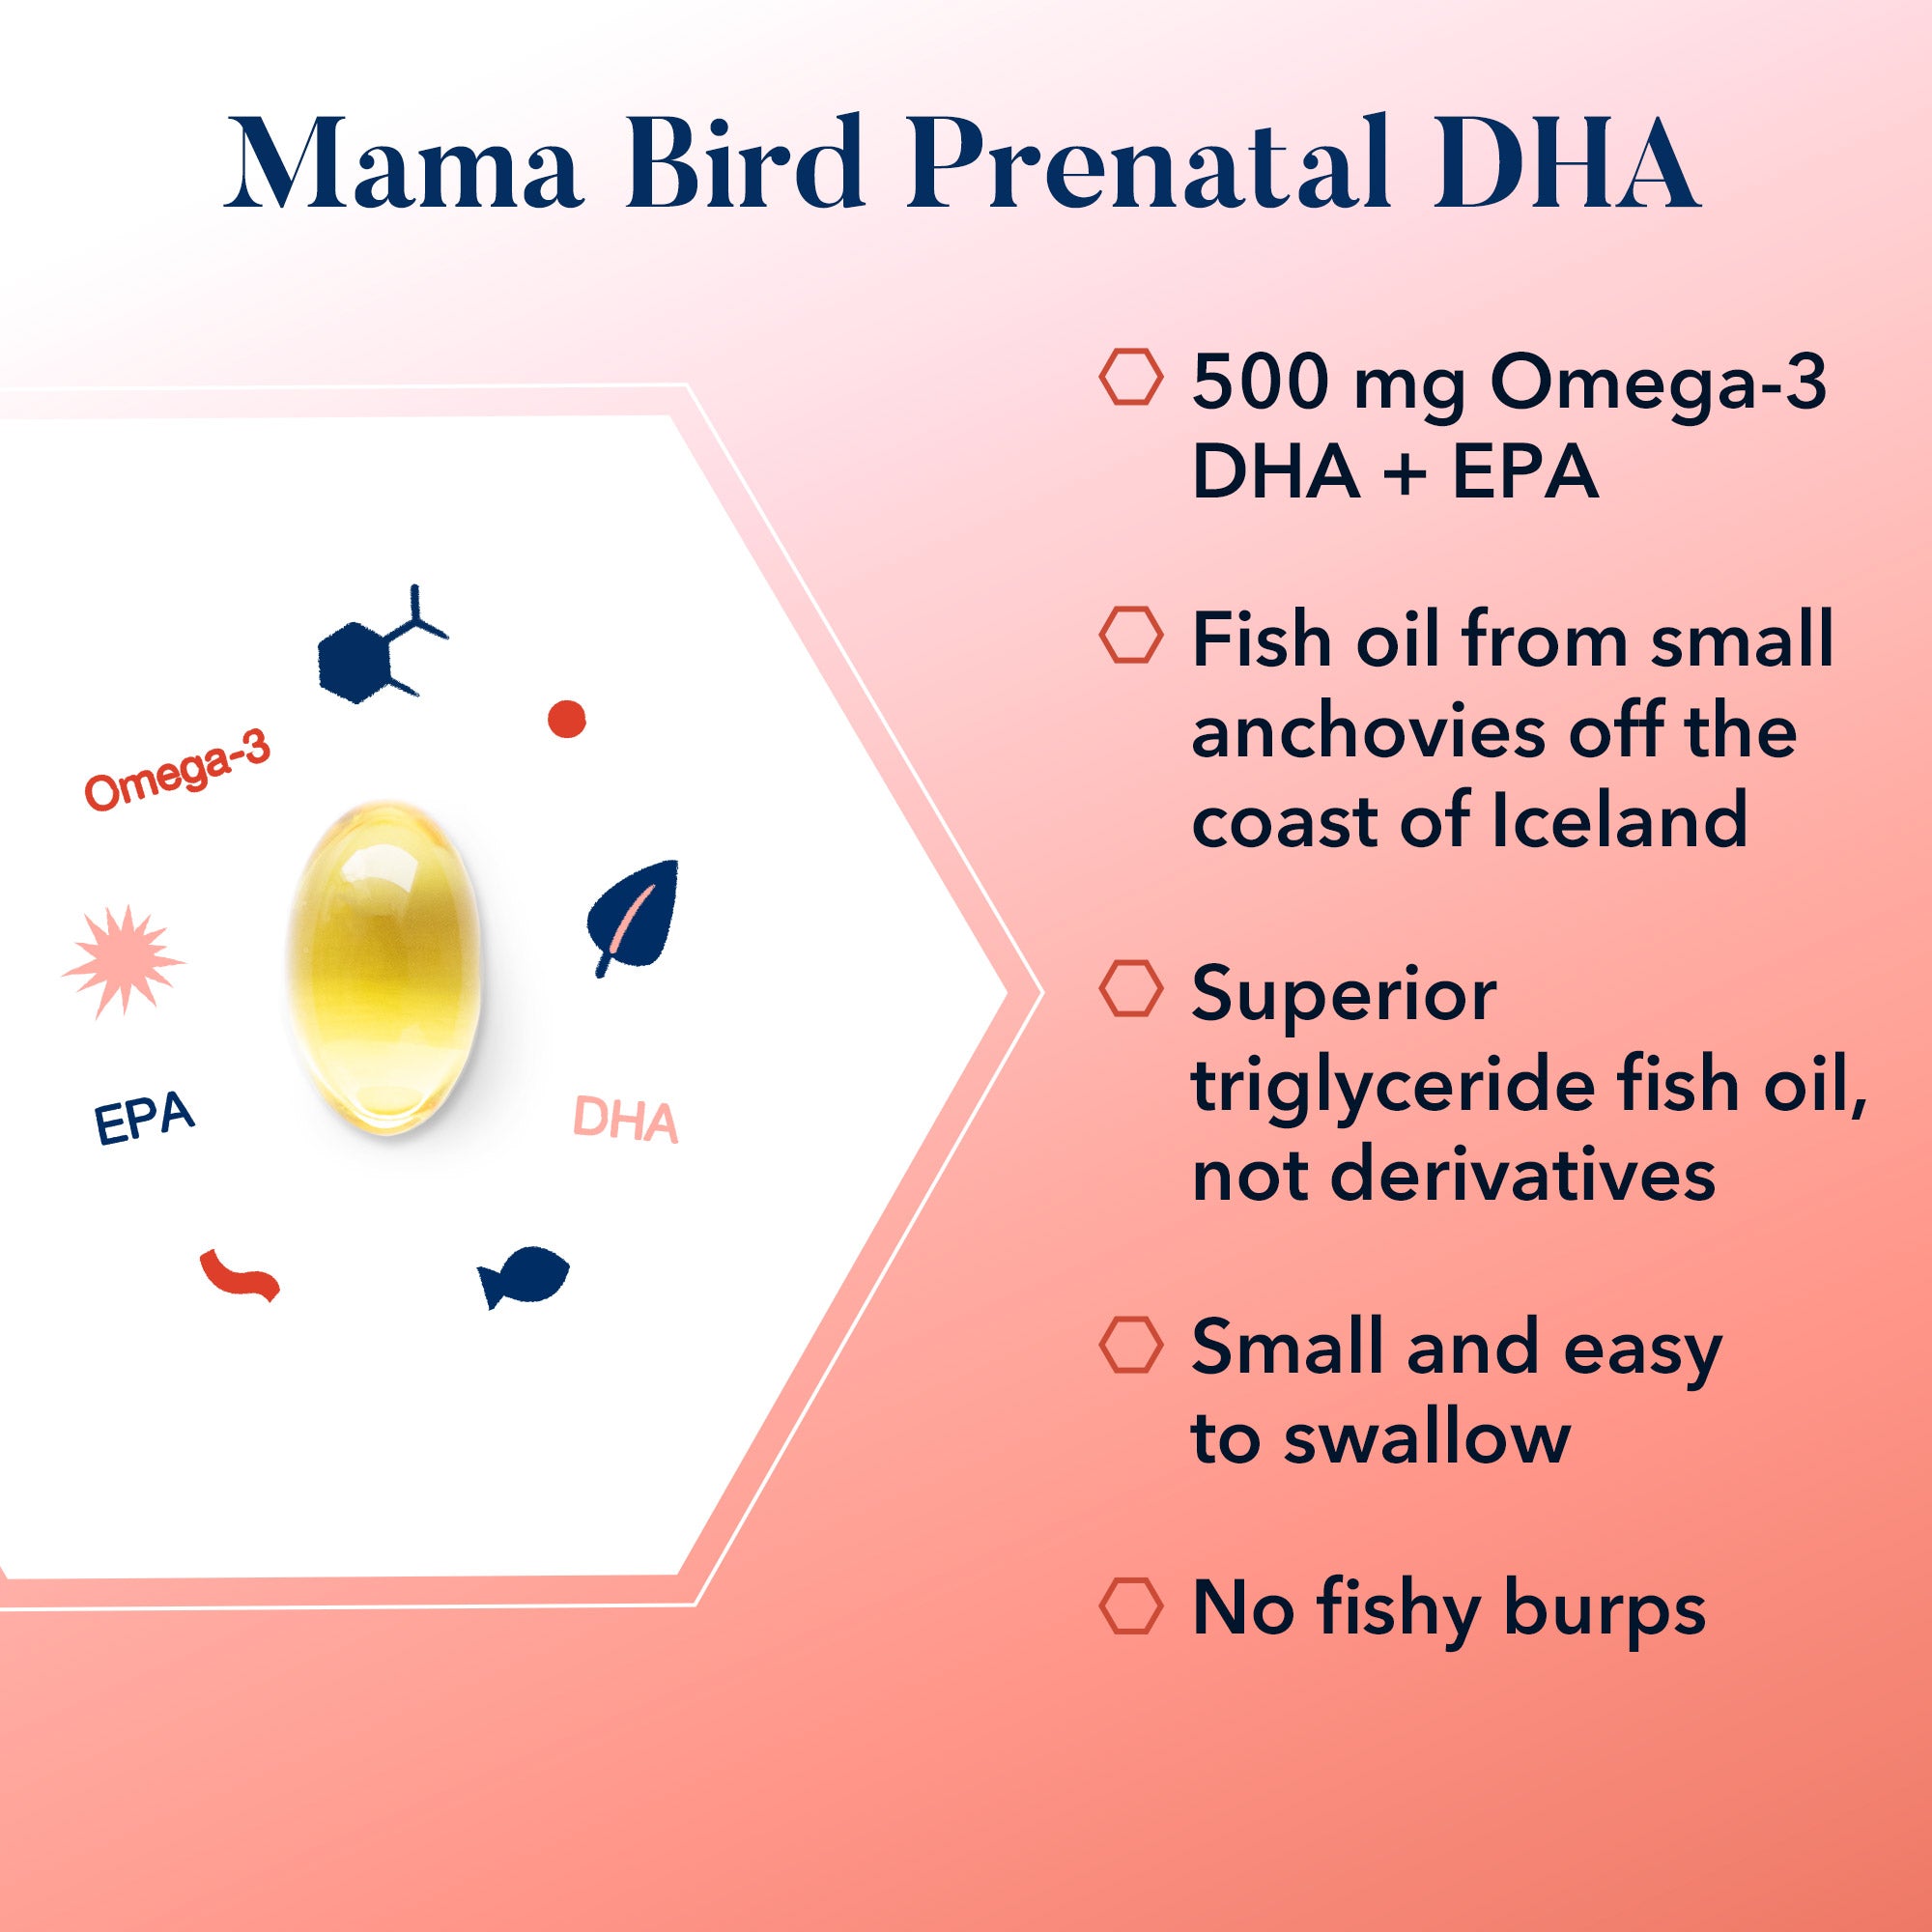 Mama Bird Prenatal DHA pill with unique symbols for baby's brain development.